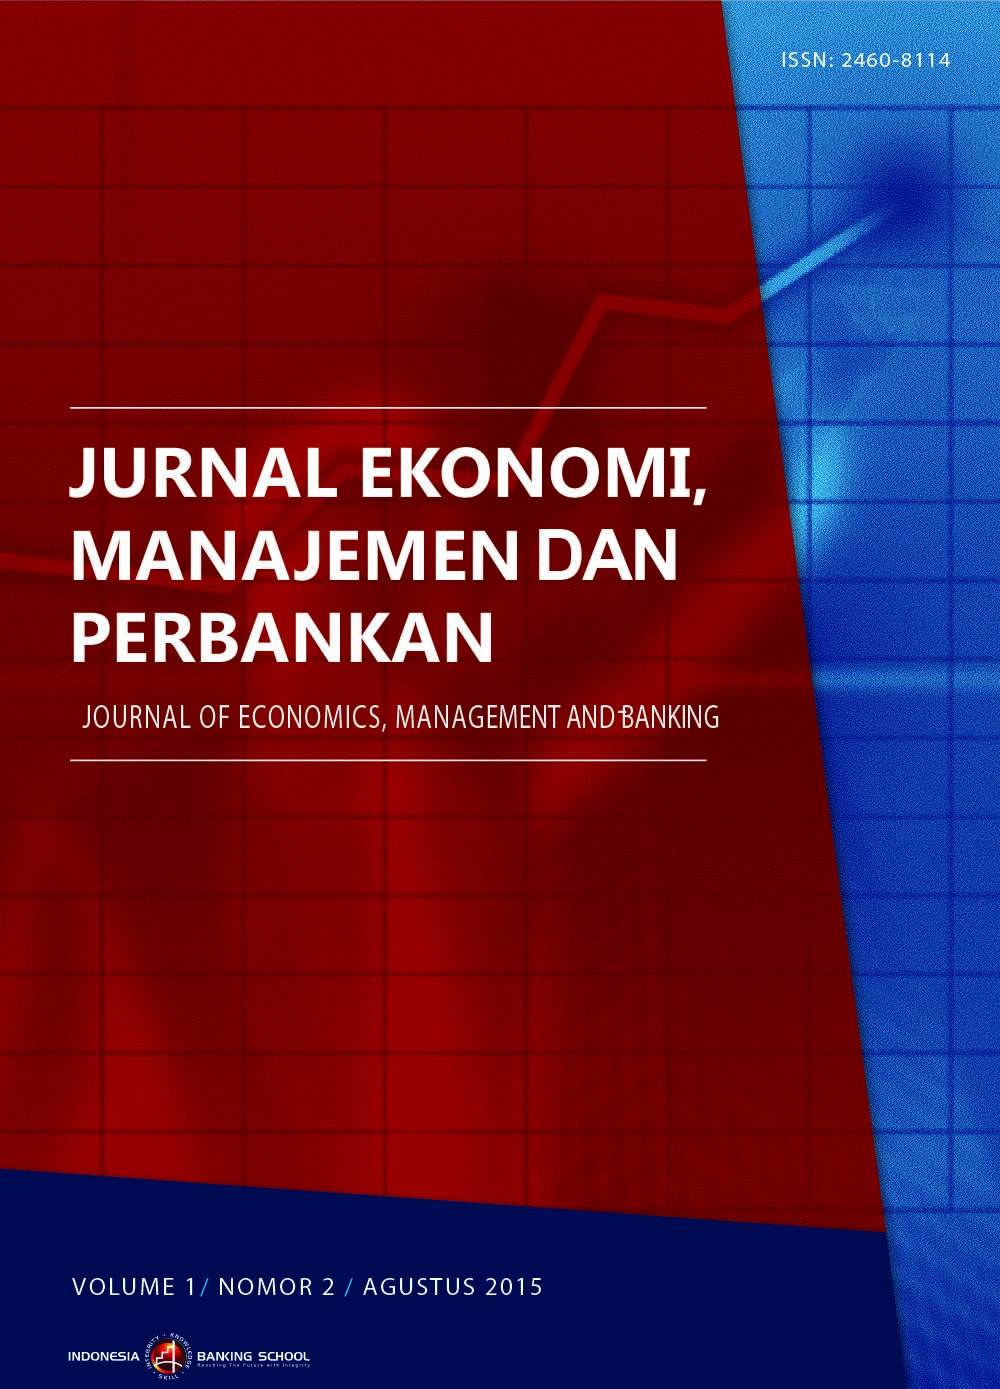 					View Vol. 1 No. 2: Jurnal Ekonomi, Manajemen dan Perbankan (Journal of Economics, Management and Banking) Volume 1 Nomor 2, Agustus 2015
				